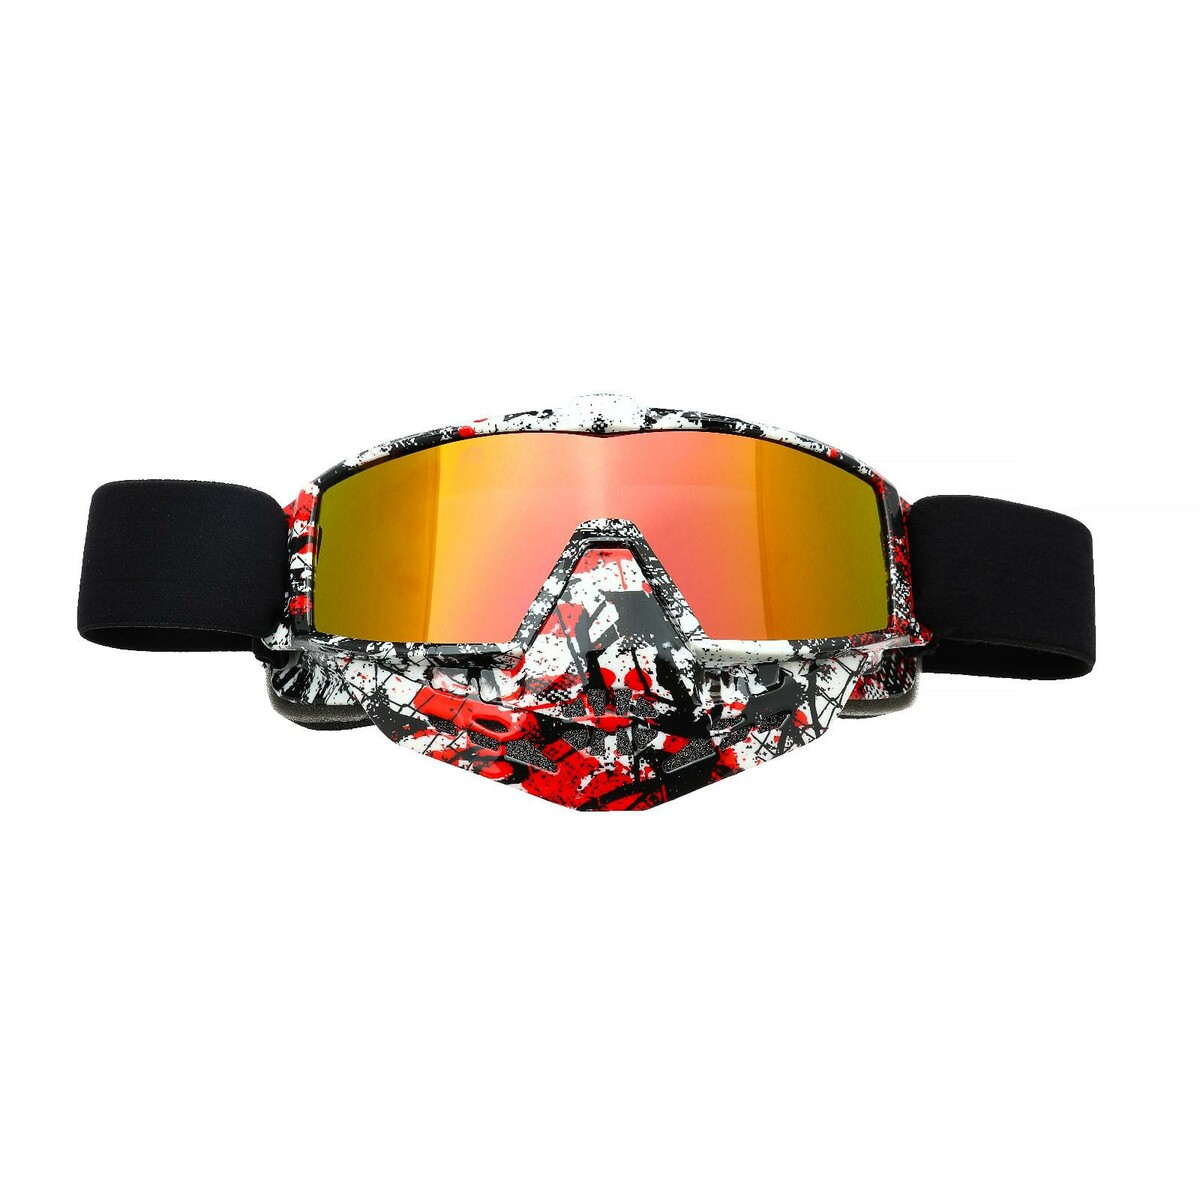 Очки-маска для езды на мототехнике, стекло золотой хром, бело-красно-черные, ом-10 очки маска для езды на мототехнике разборные стекло оранжевый хром